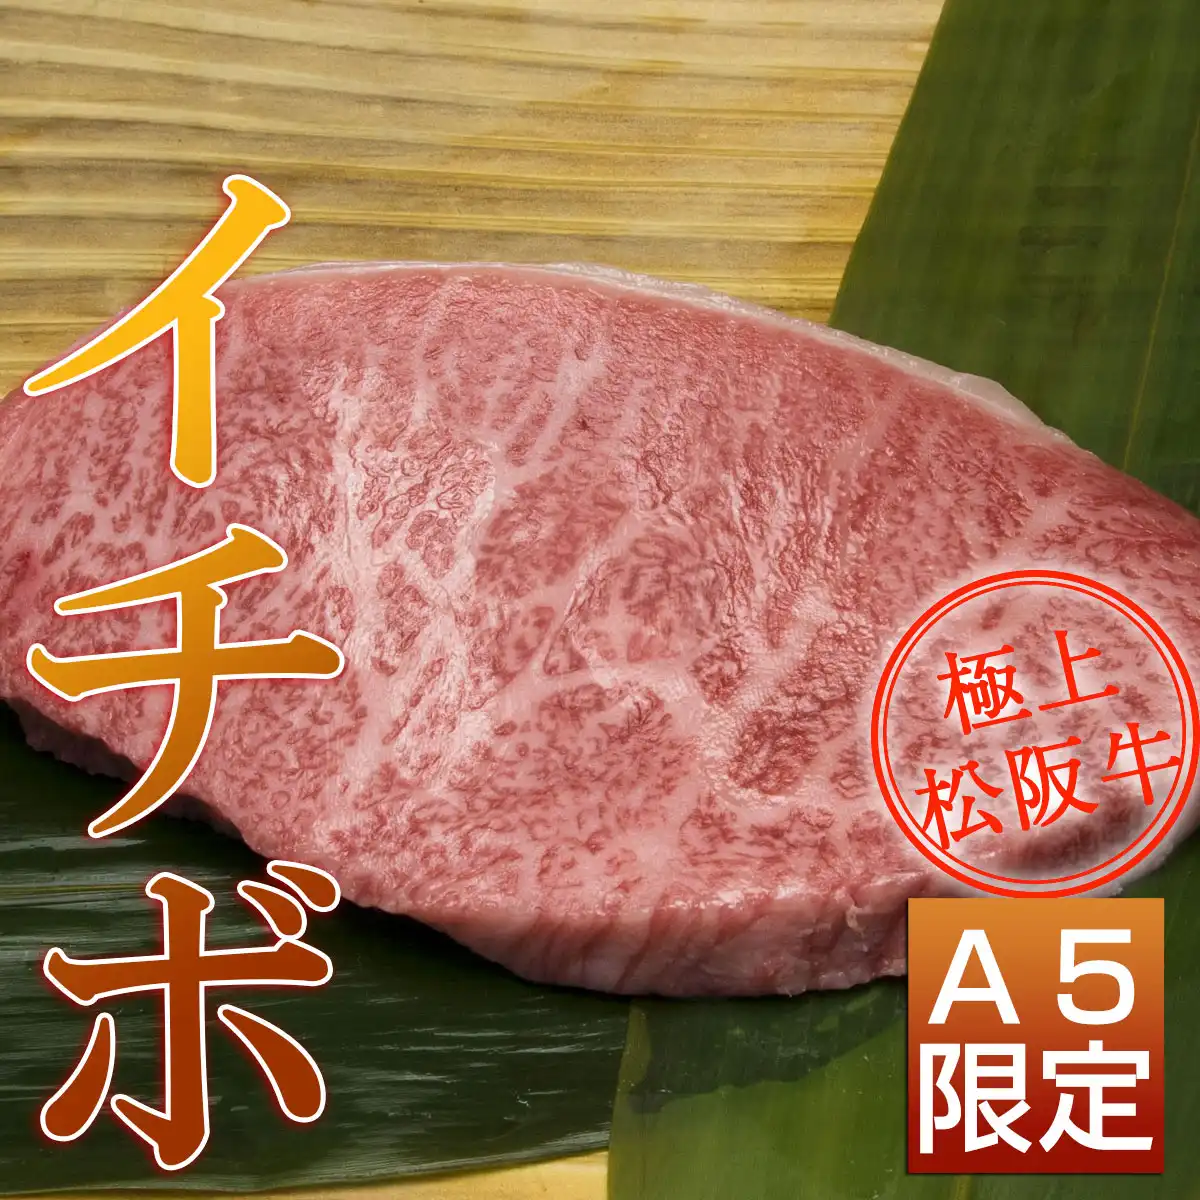 松阪牛サーロインステーキ食べ比べB（サーロイン+トモサン+モモ+イチボステーキ）